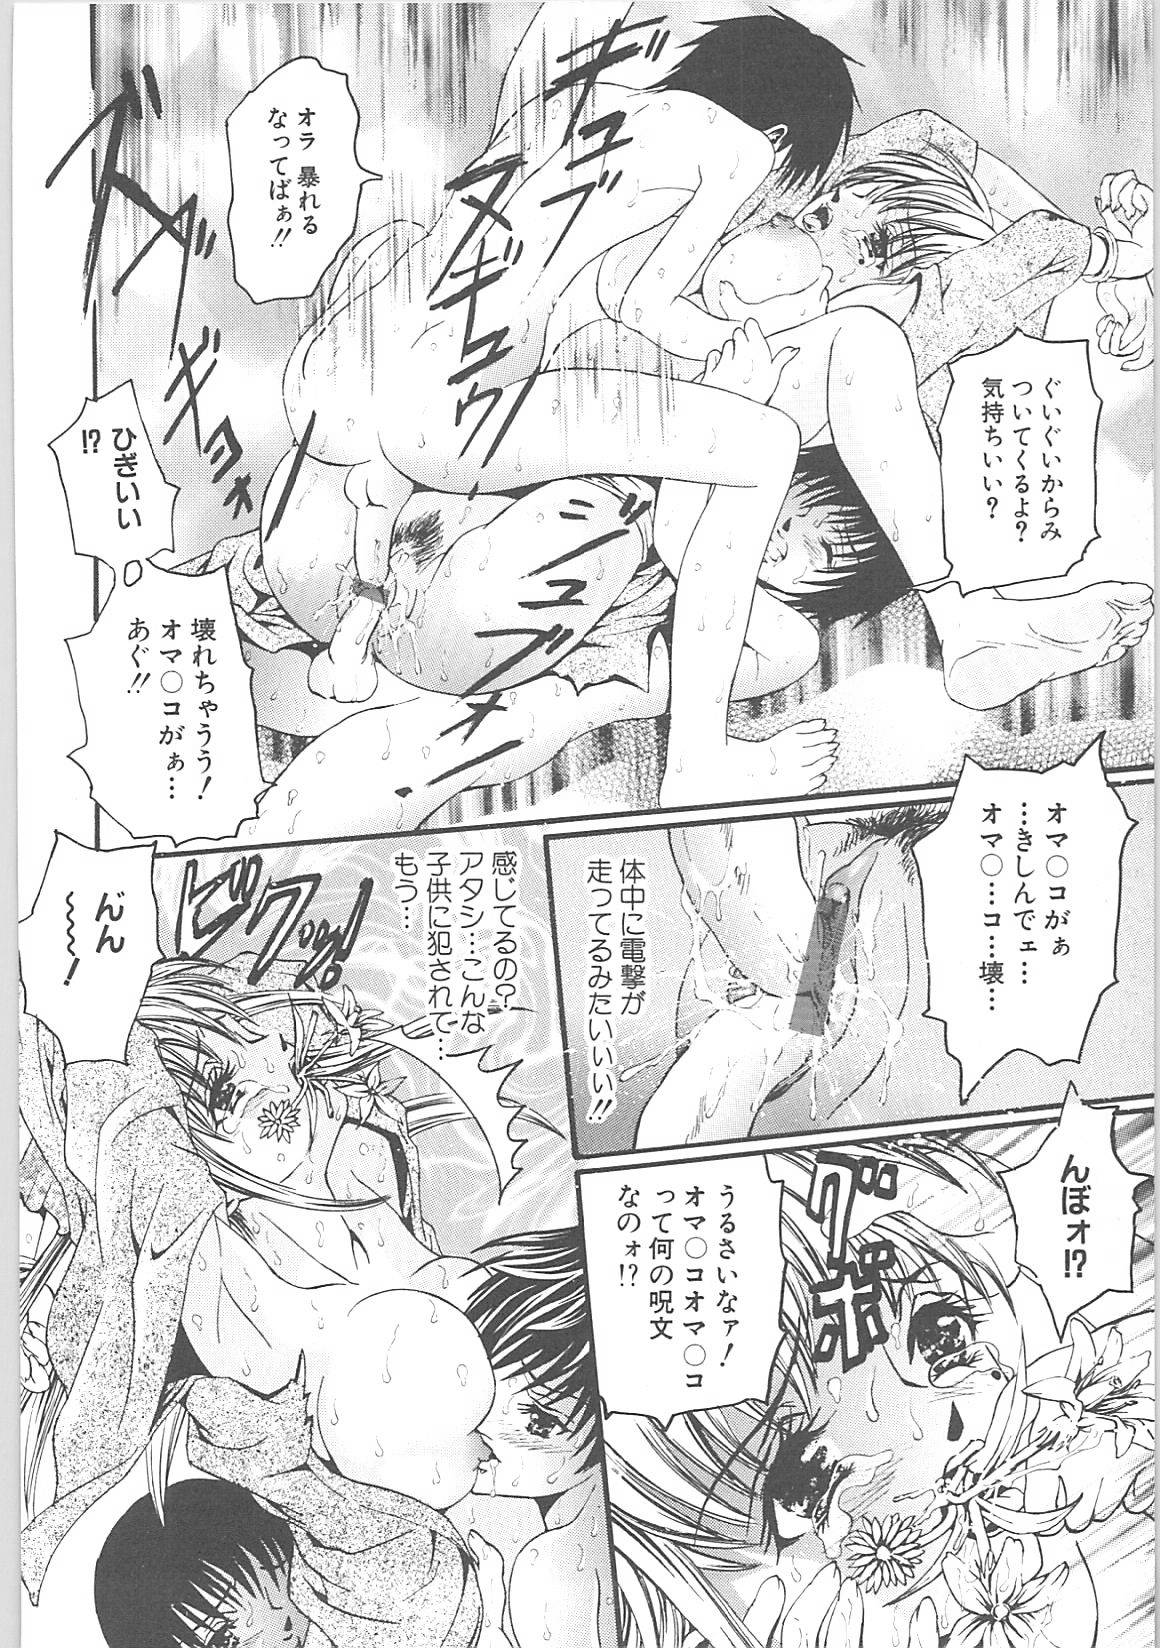 [TENMA FEMIO] Tsumi to batsu (crime and  punishment) page 44 full